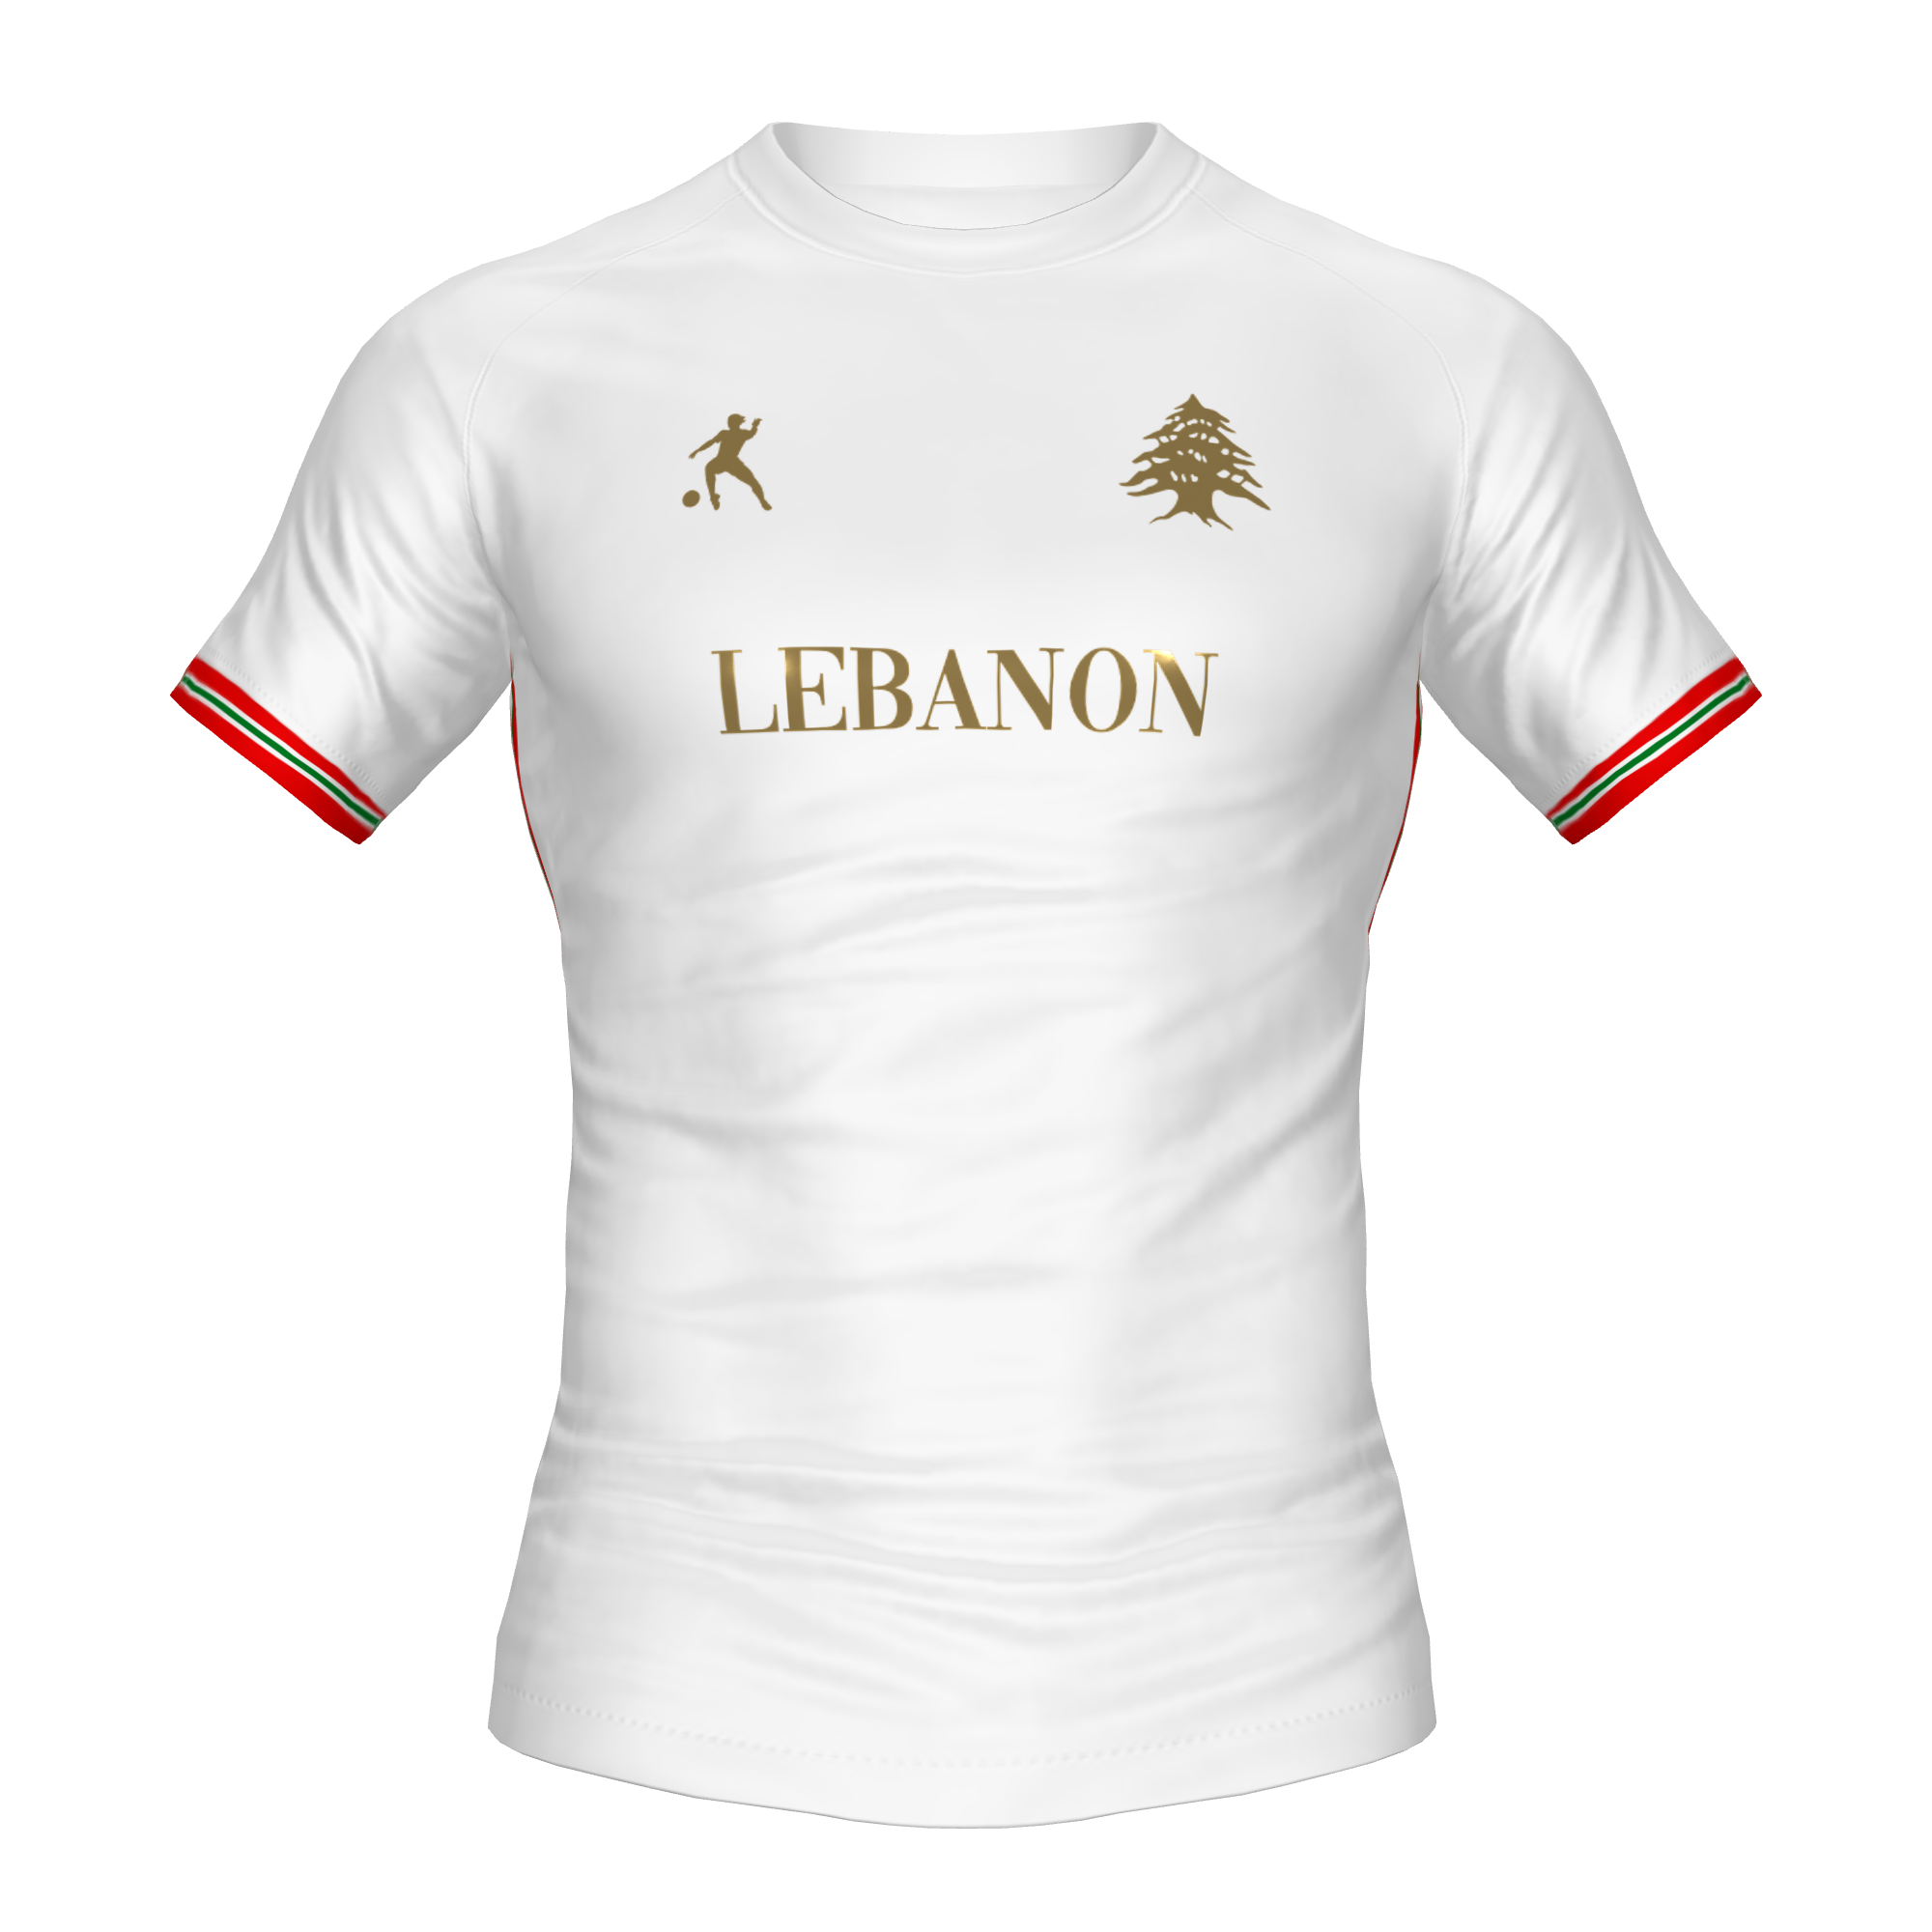 LEBANON FOOTBALL SHIRT